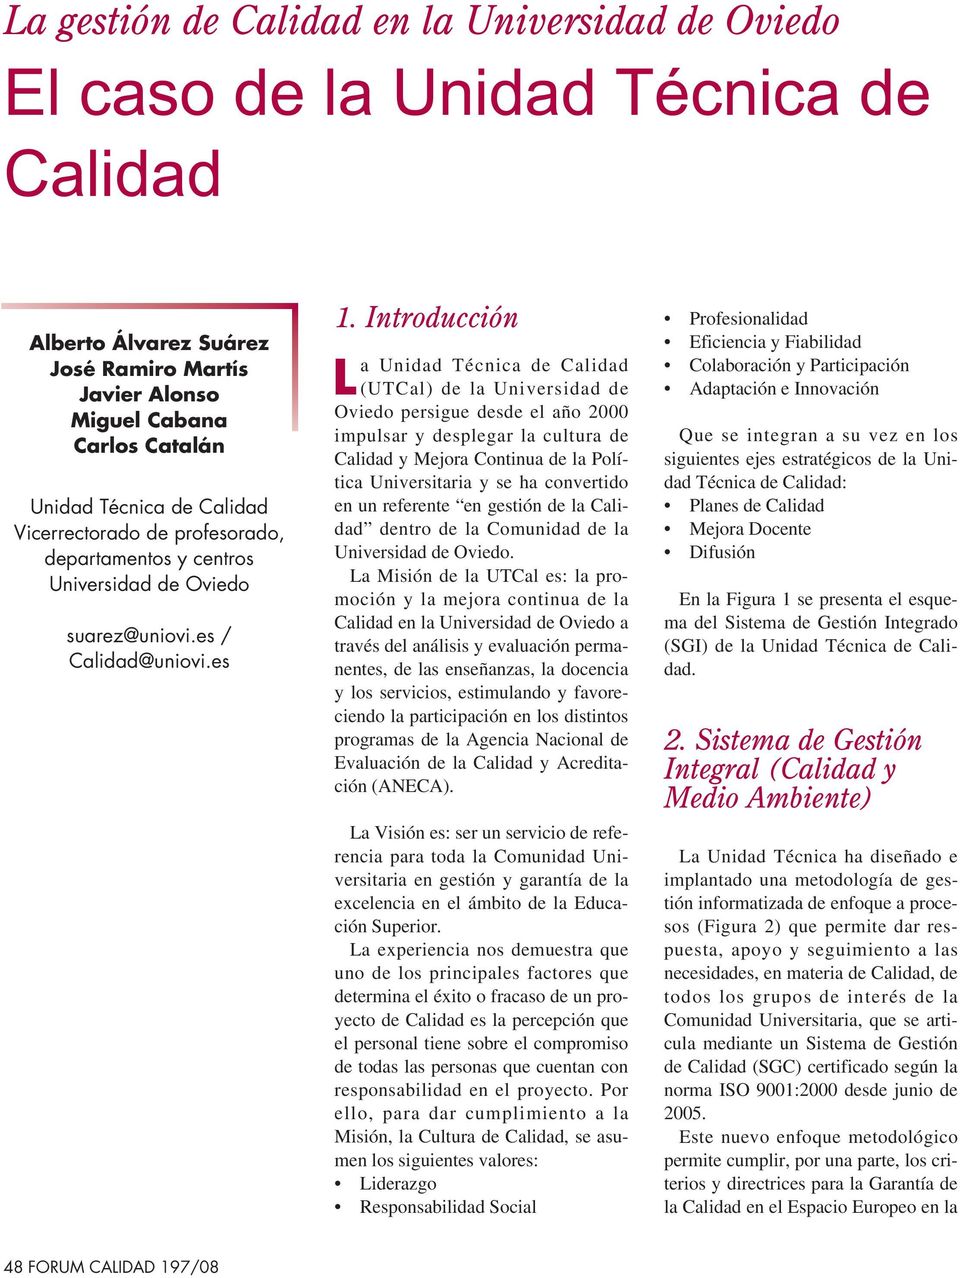 Introducción La Unidad Técnica de Calidad (UTCal) de la Universidad de Oviedo persigue desde el año 2000 impulsar y desplegar la cultura de Calidad y Mejora Continua de la Política Universitaria y se